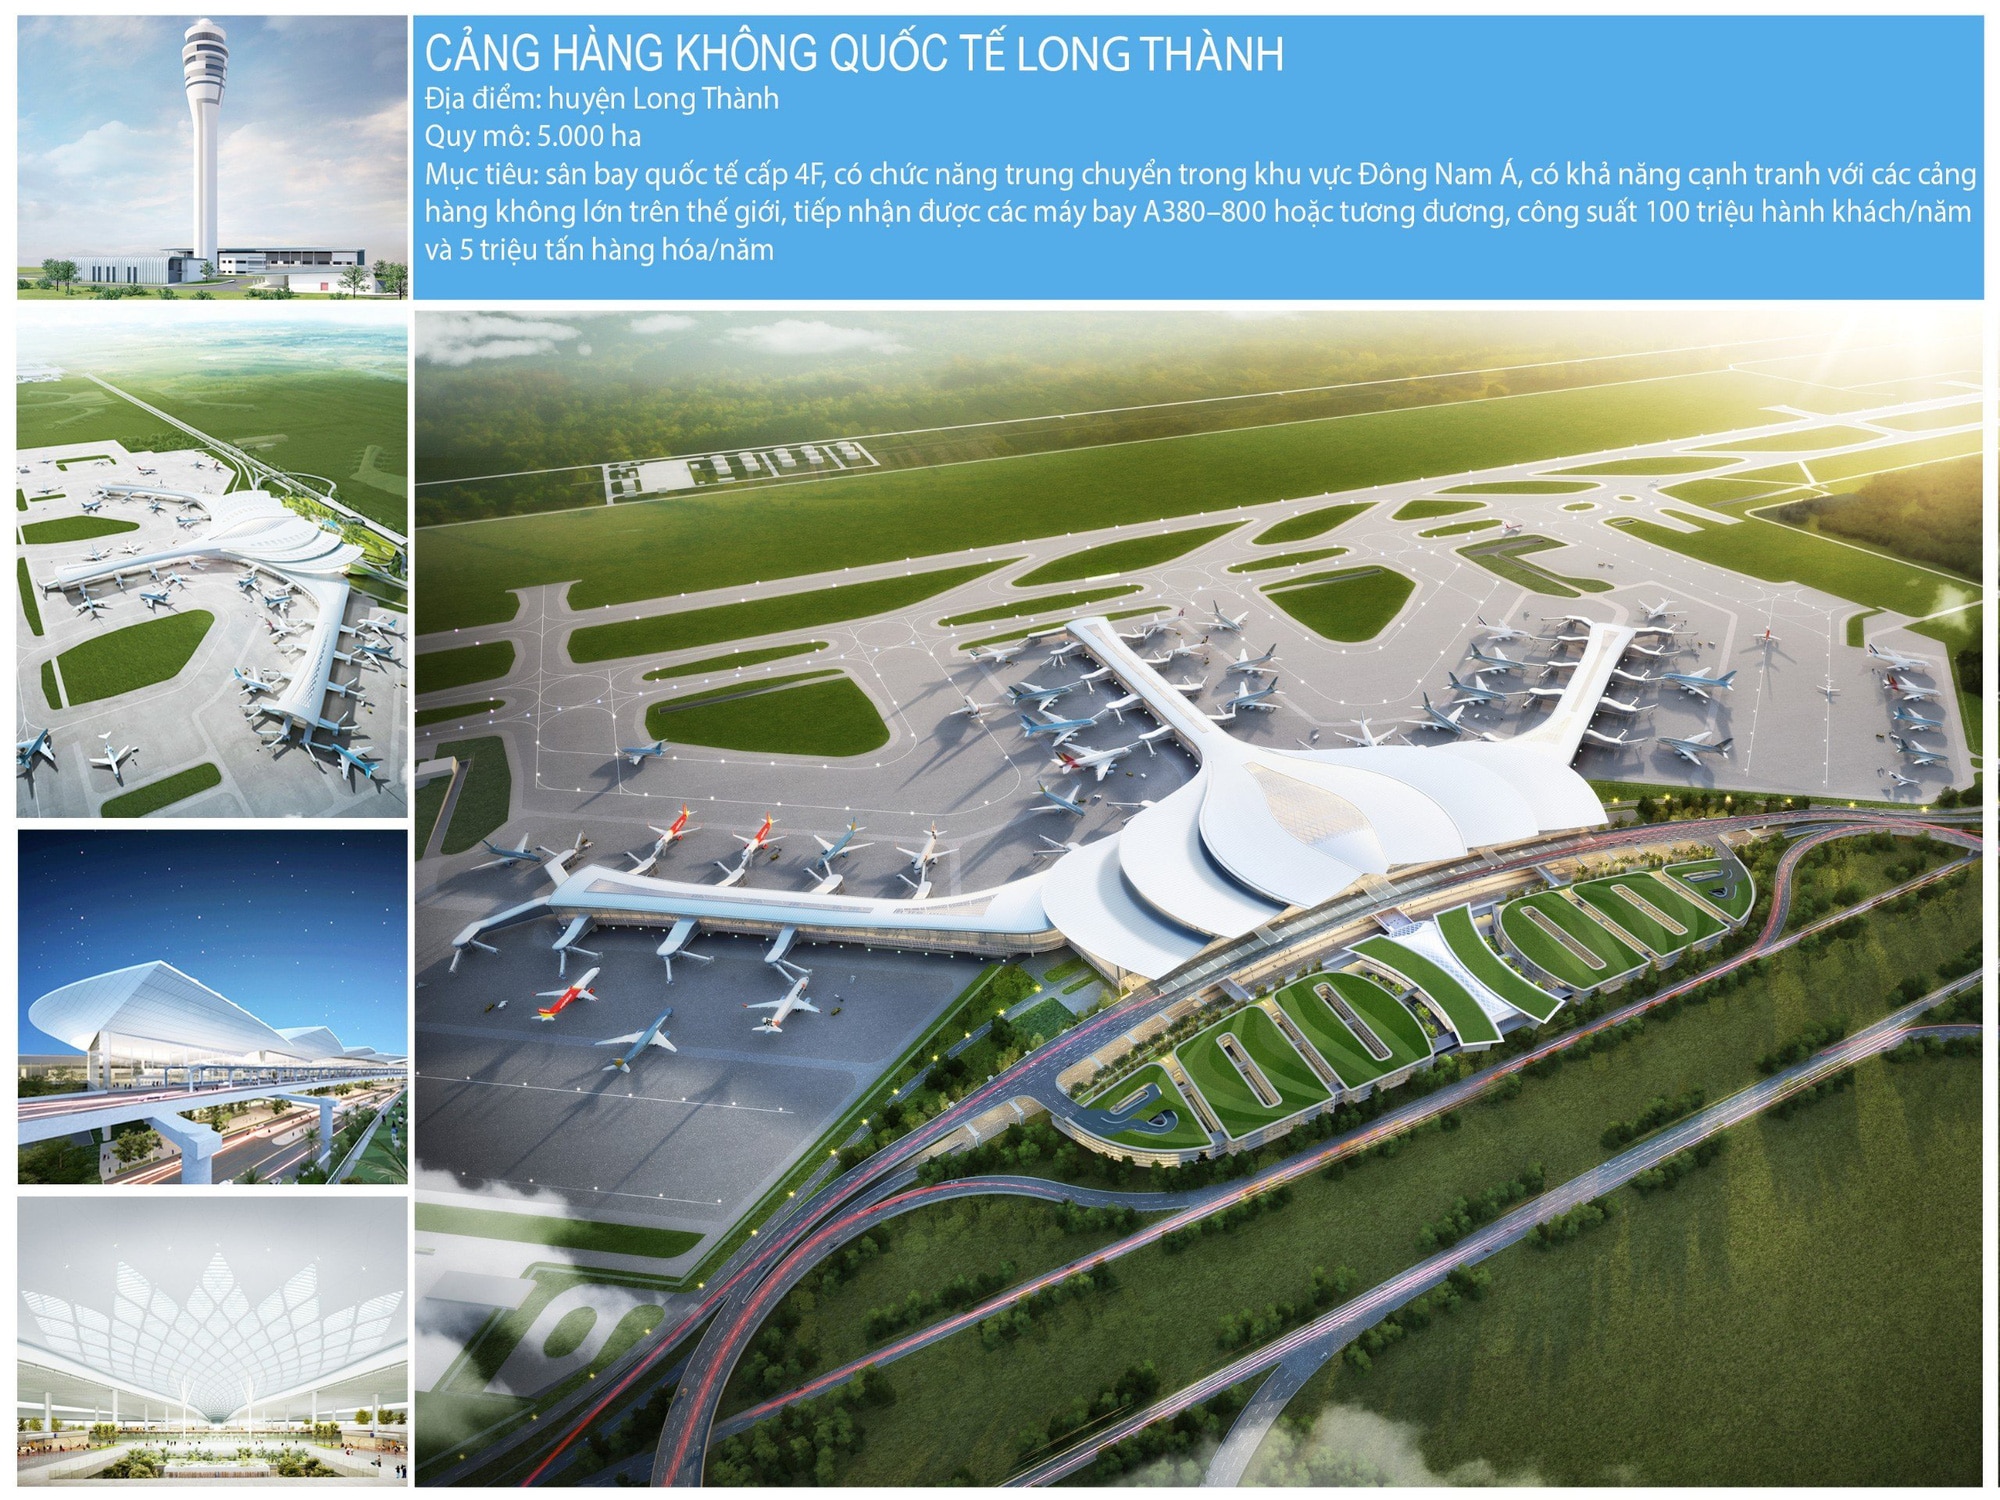 Mô hình sân bay Long Thành. Khu vực làm sân bay cũng là nơi được kỳ vọng tạo đọng lực phát triển kinh tế cho cả vùng - Ảnh: TL